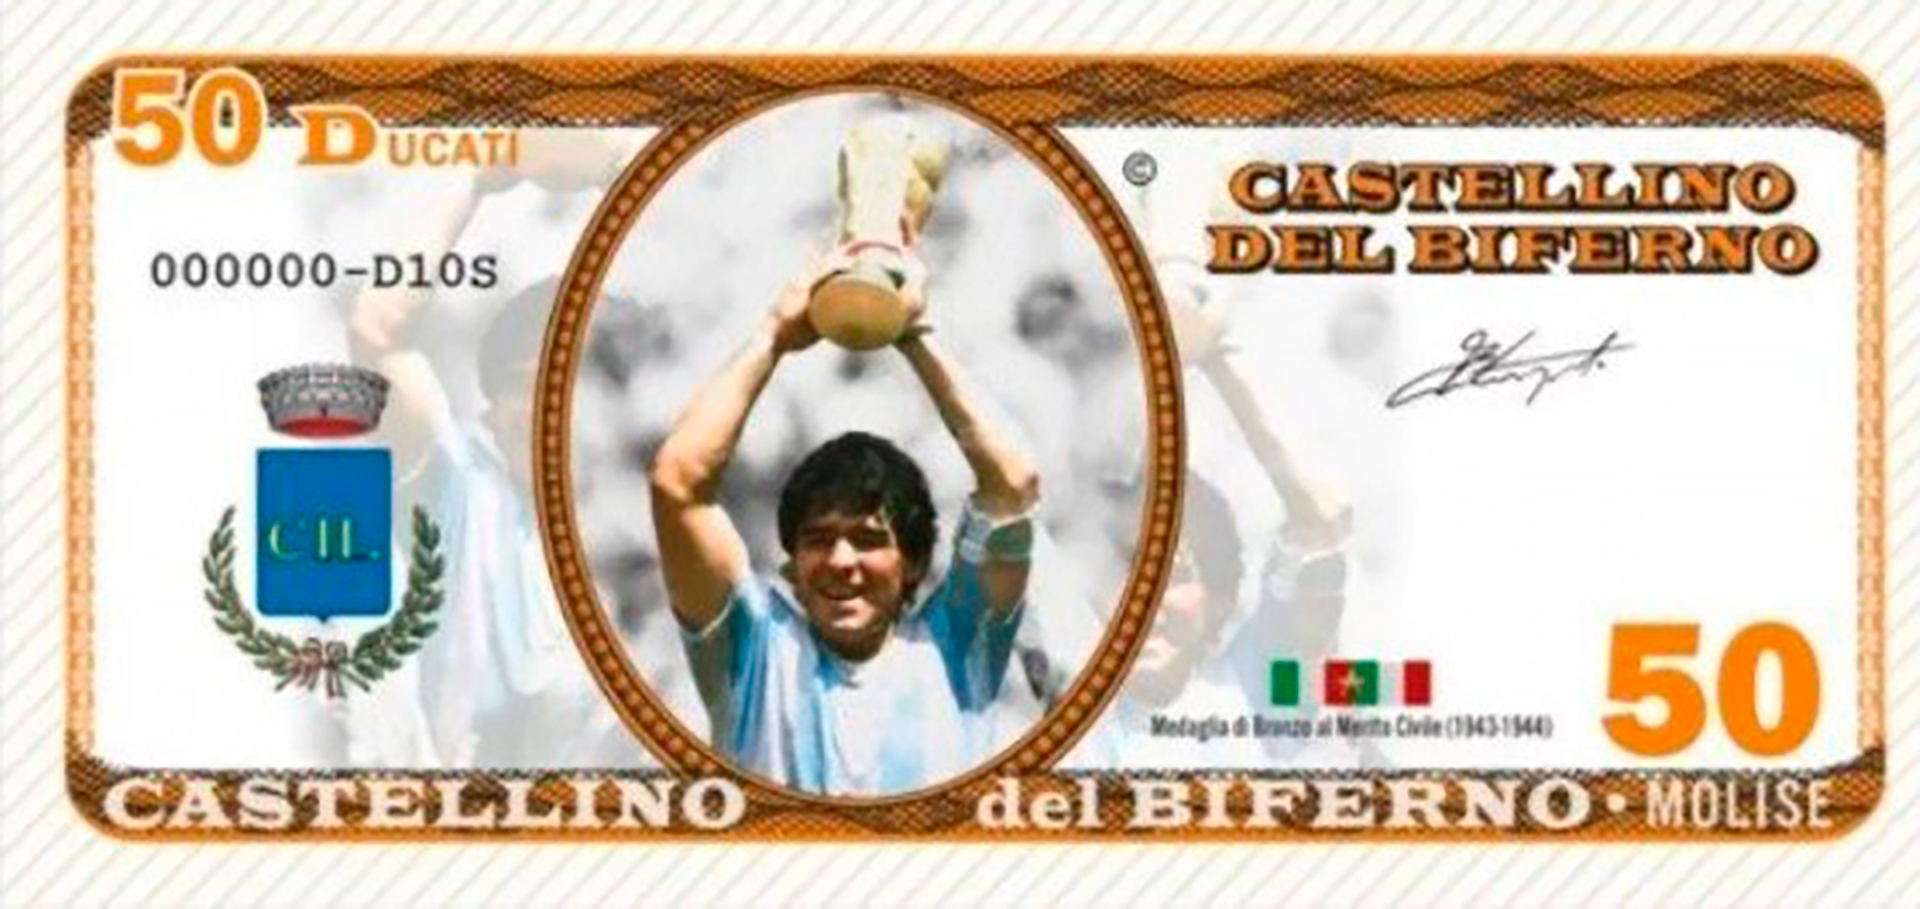 En el billete de 50 Maradona aparece levantando la Copa del Mundo en México 